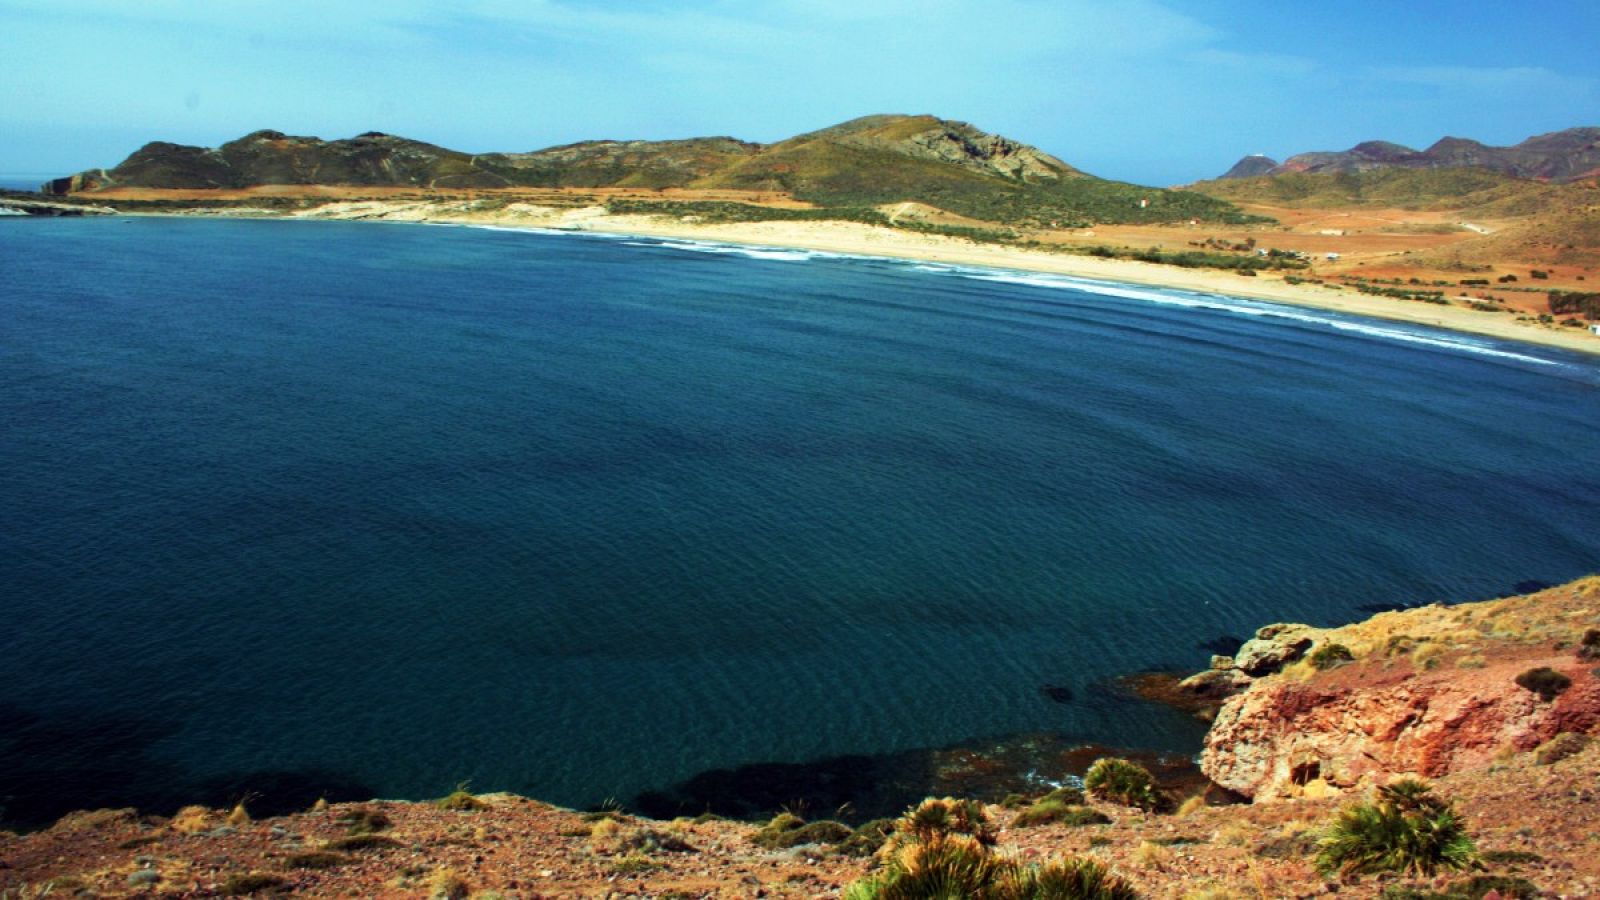 La bahía de los Genoveses situada en el Parque Natural del Cabo de Gata-Níjar, Almería